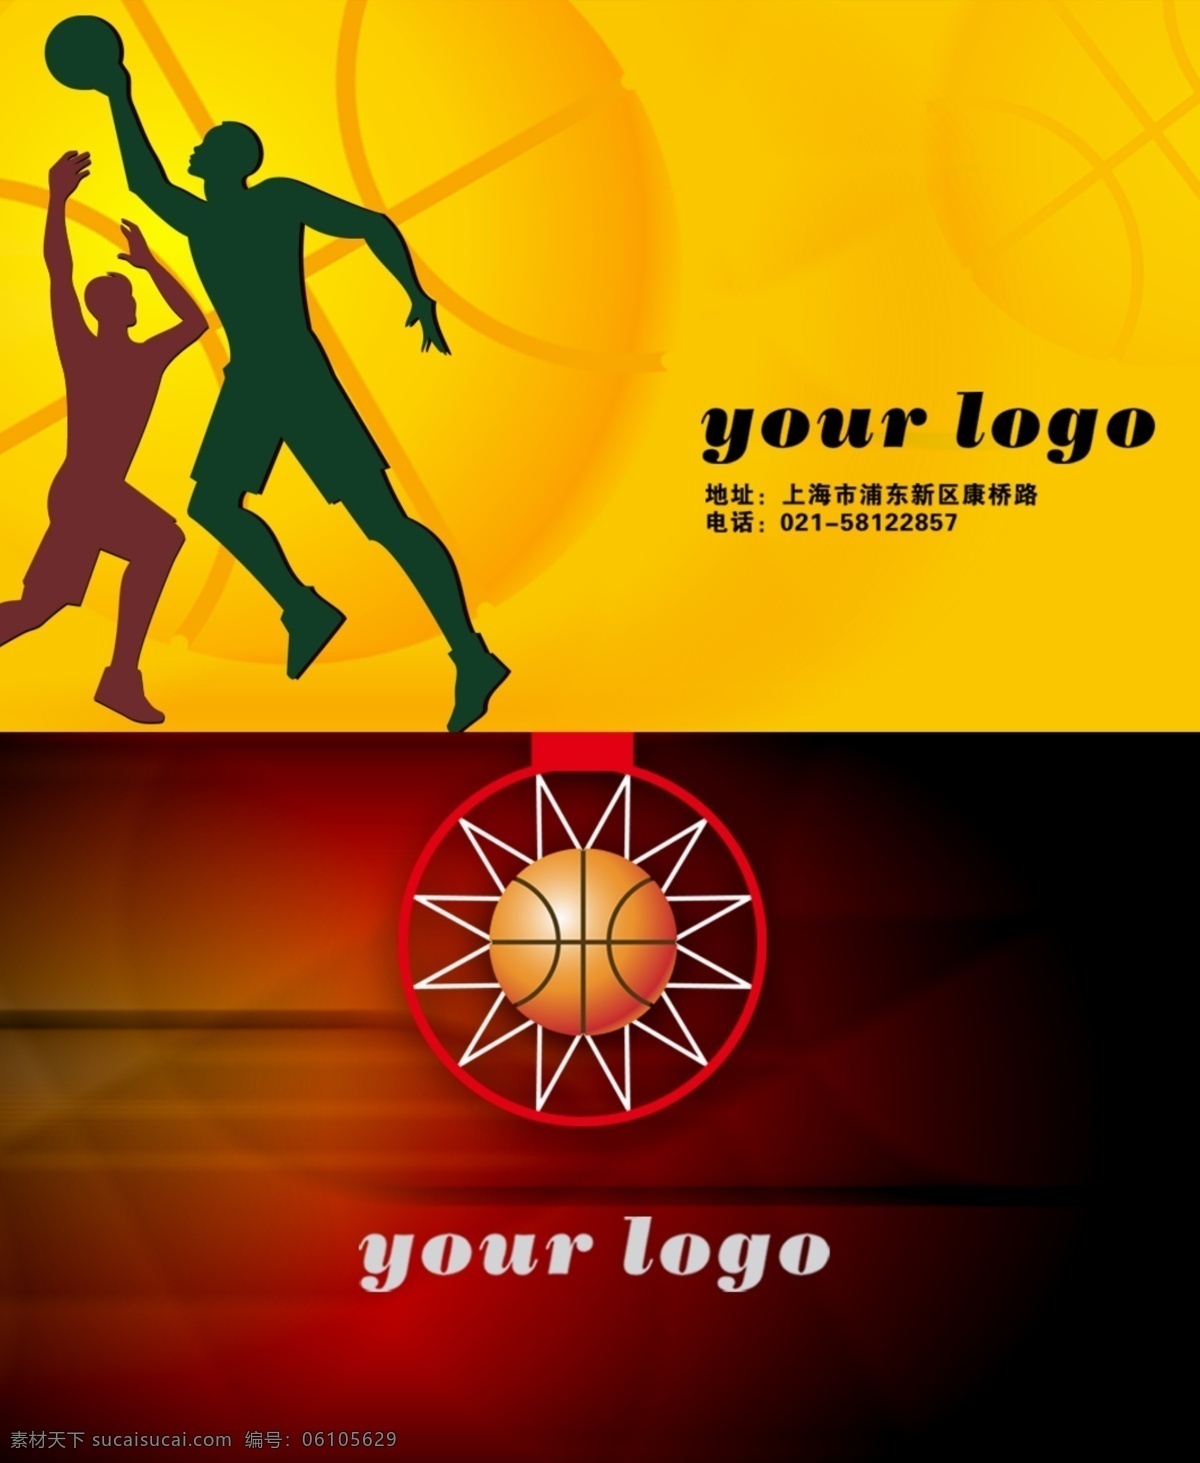 国际名片3 篮球 体育运动 企业名片 创意名片 个性名片 黄色